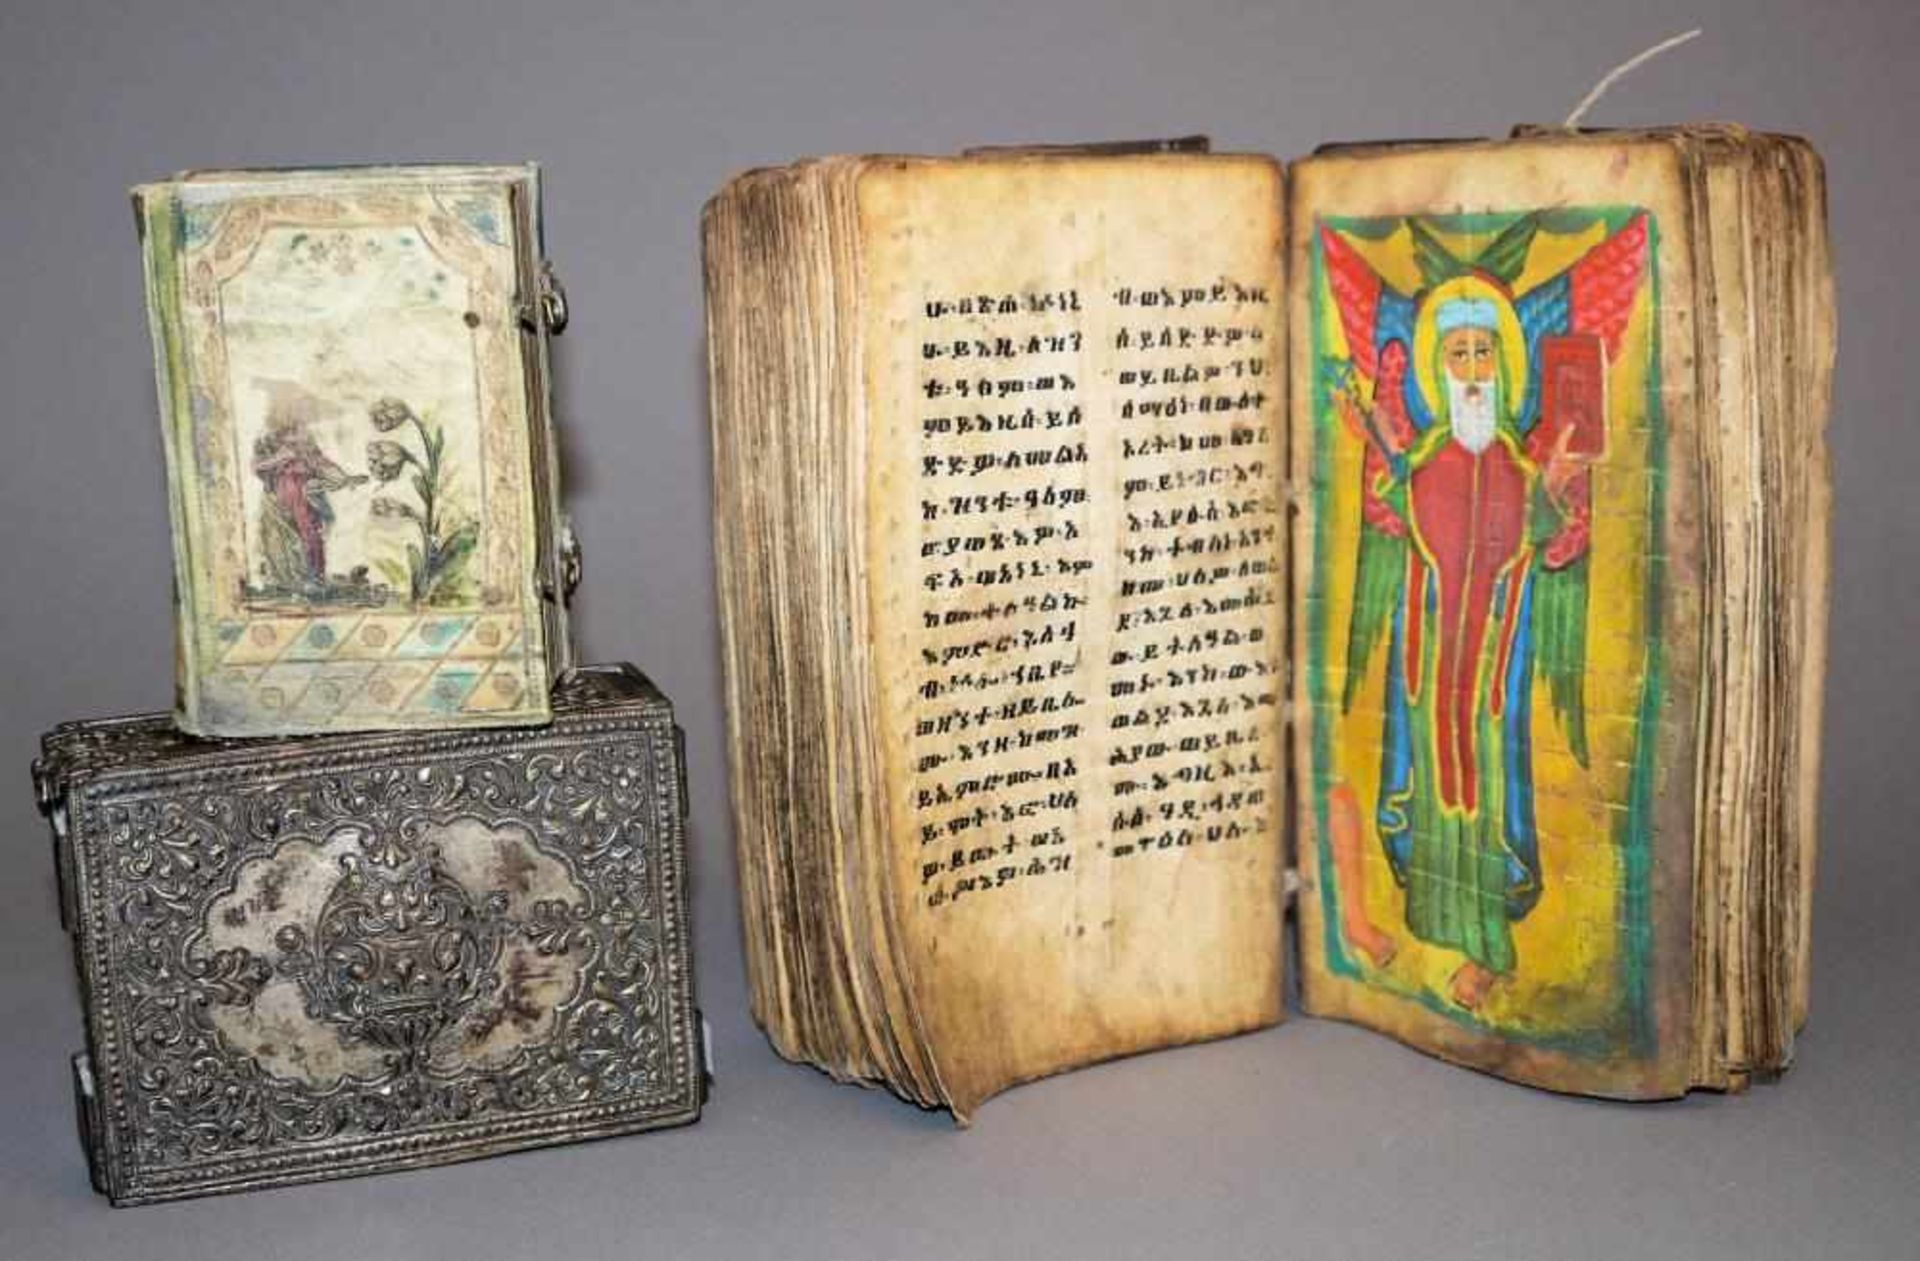 Koptische Bibel, Äthiopien, 18. Jh. & griechisch-orthodoxe Bibel in versilberter Schatulle, 18.